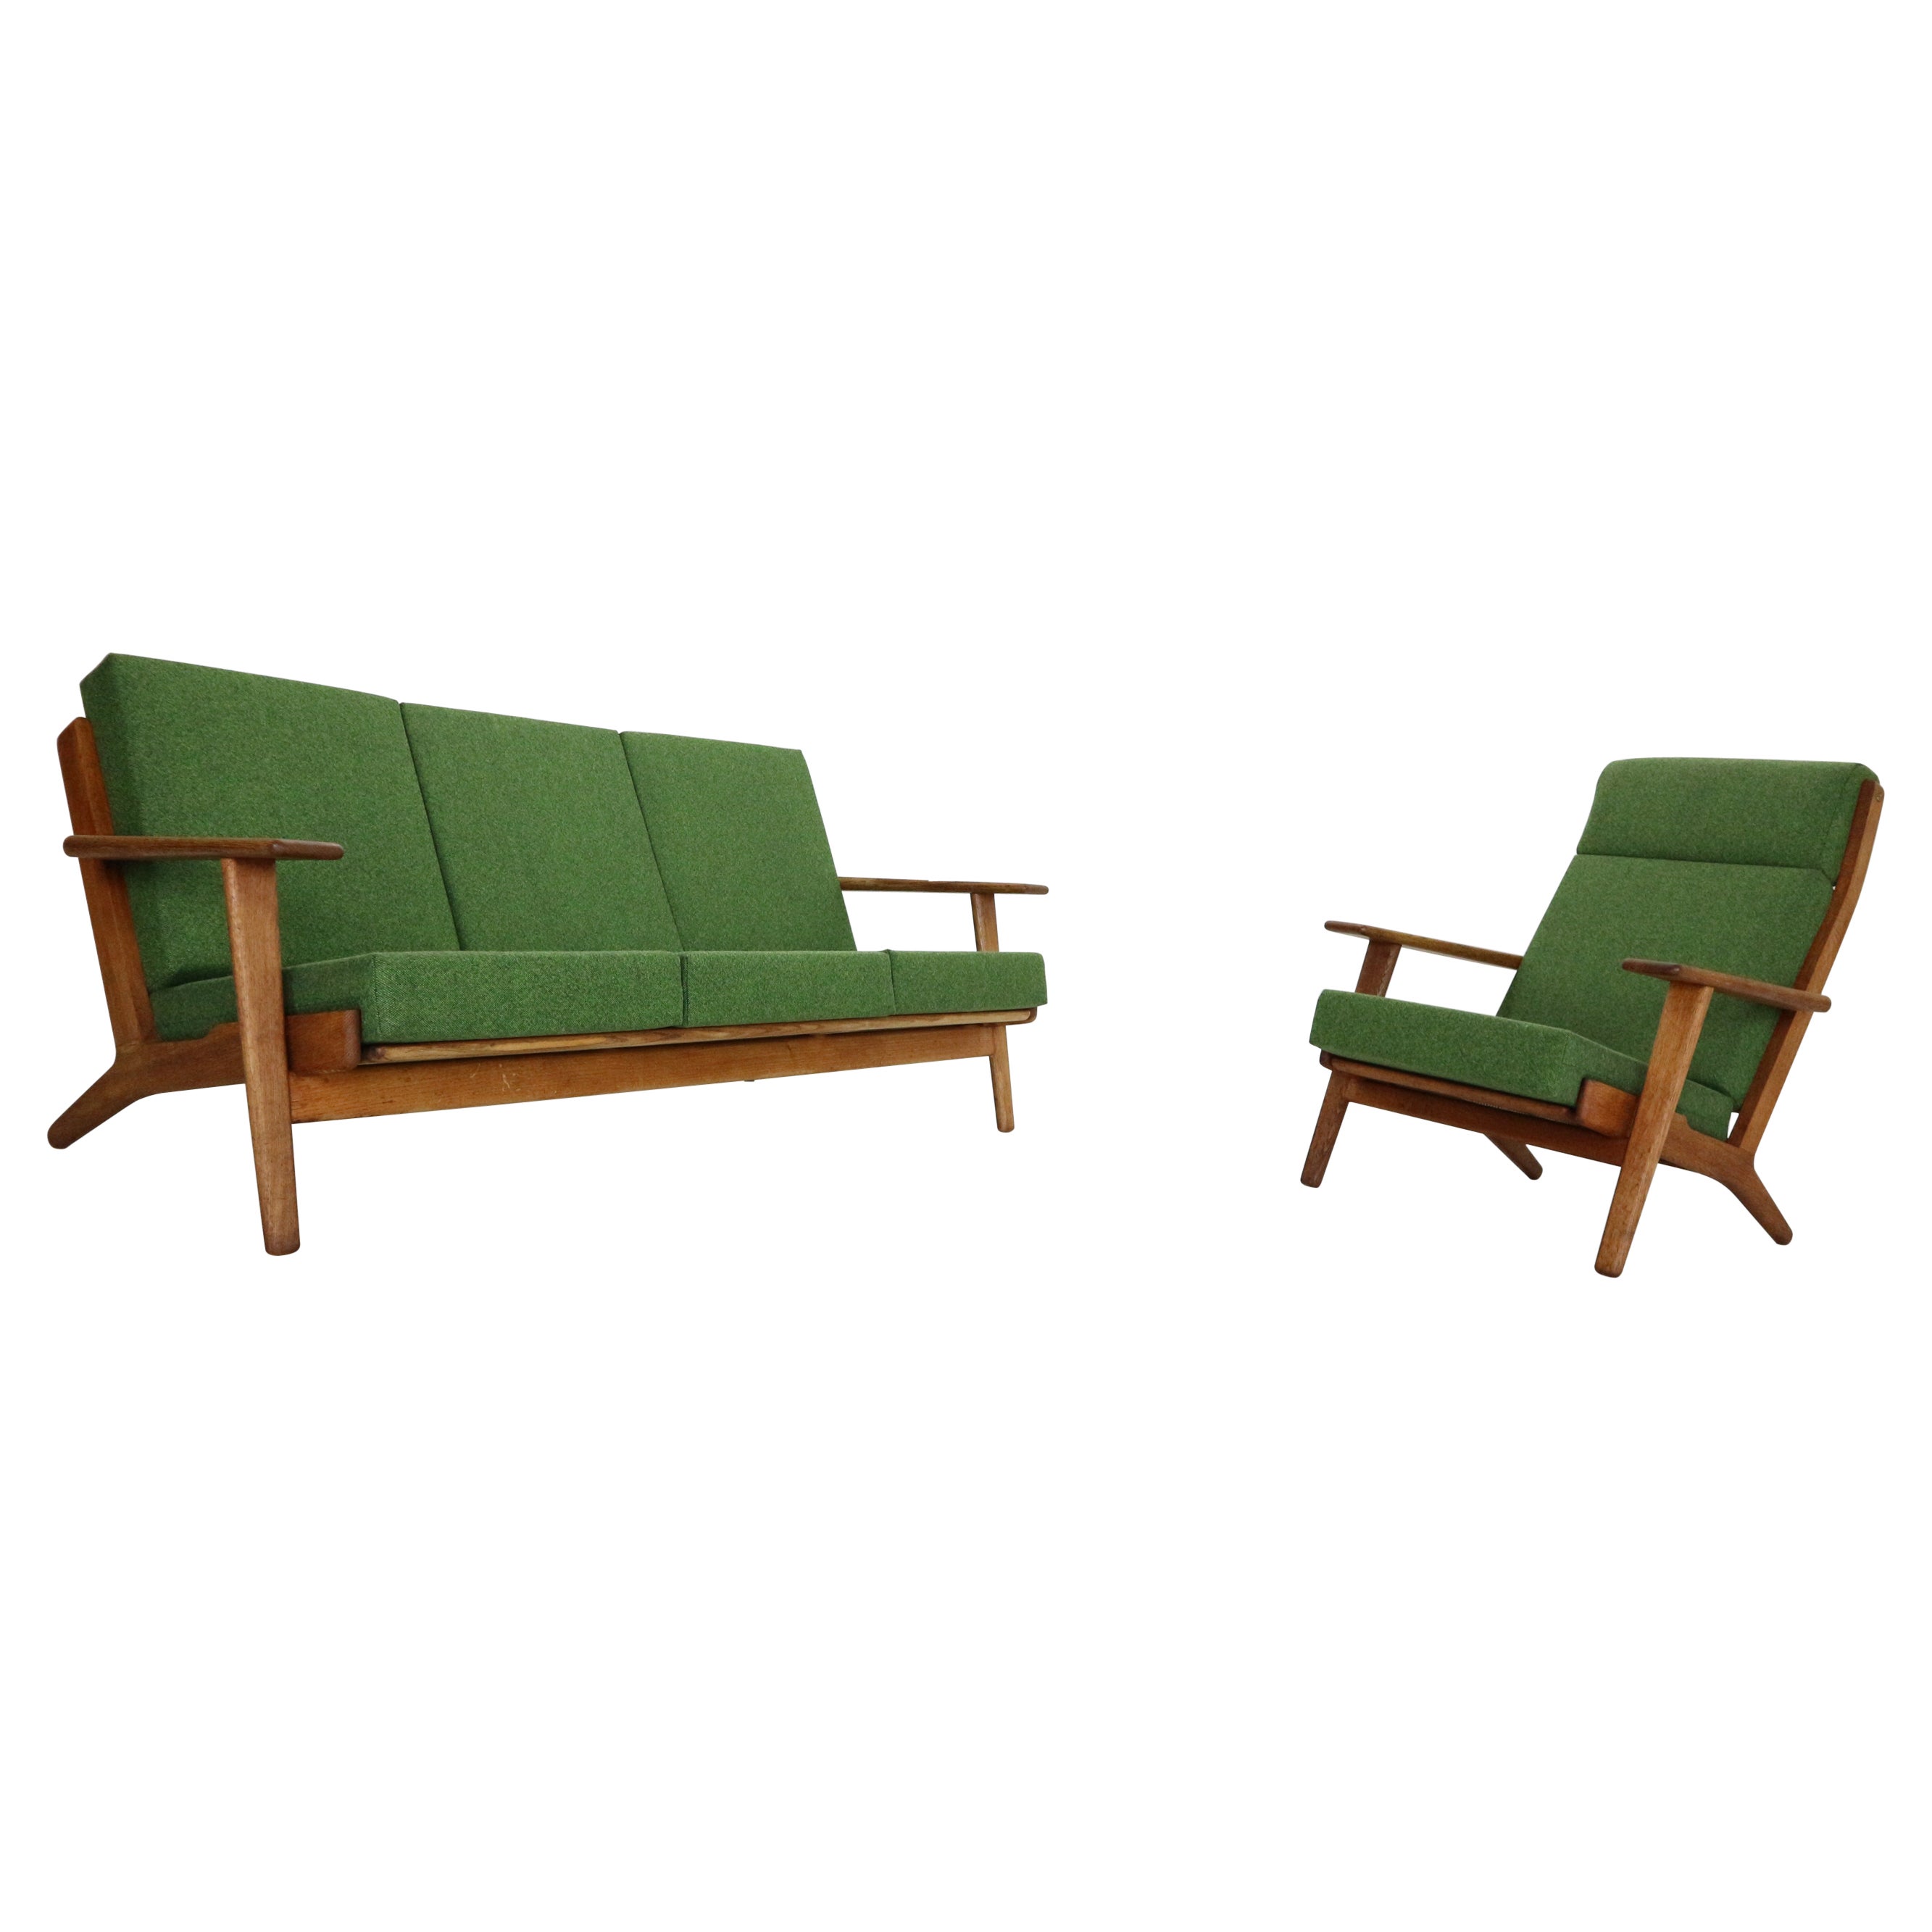 Hans J. Wegner Oak & Green New Reupholstery Living Room Set "GE290" 1960 Denmark